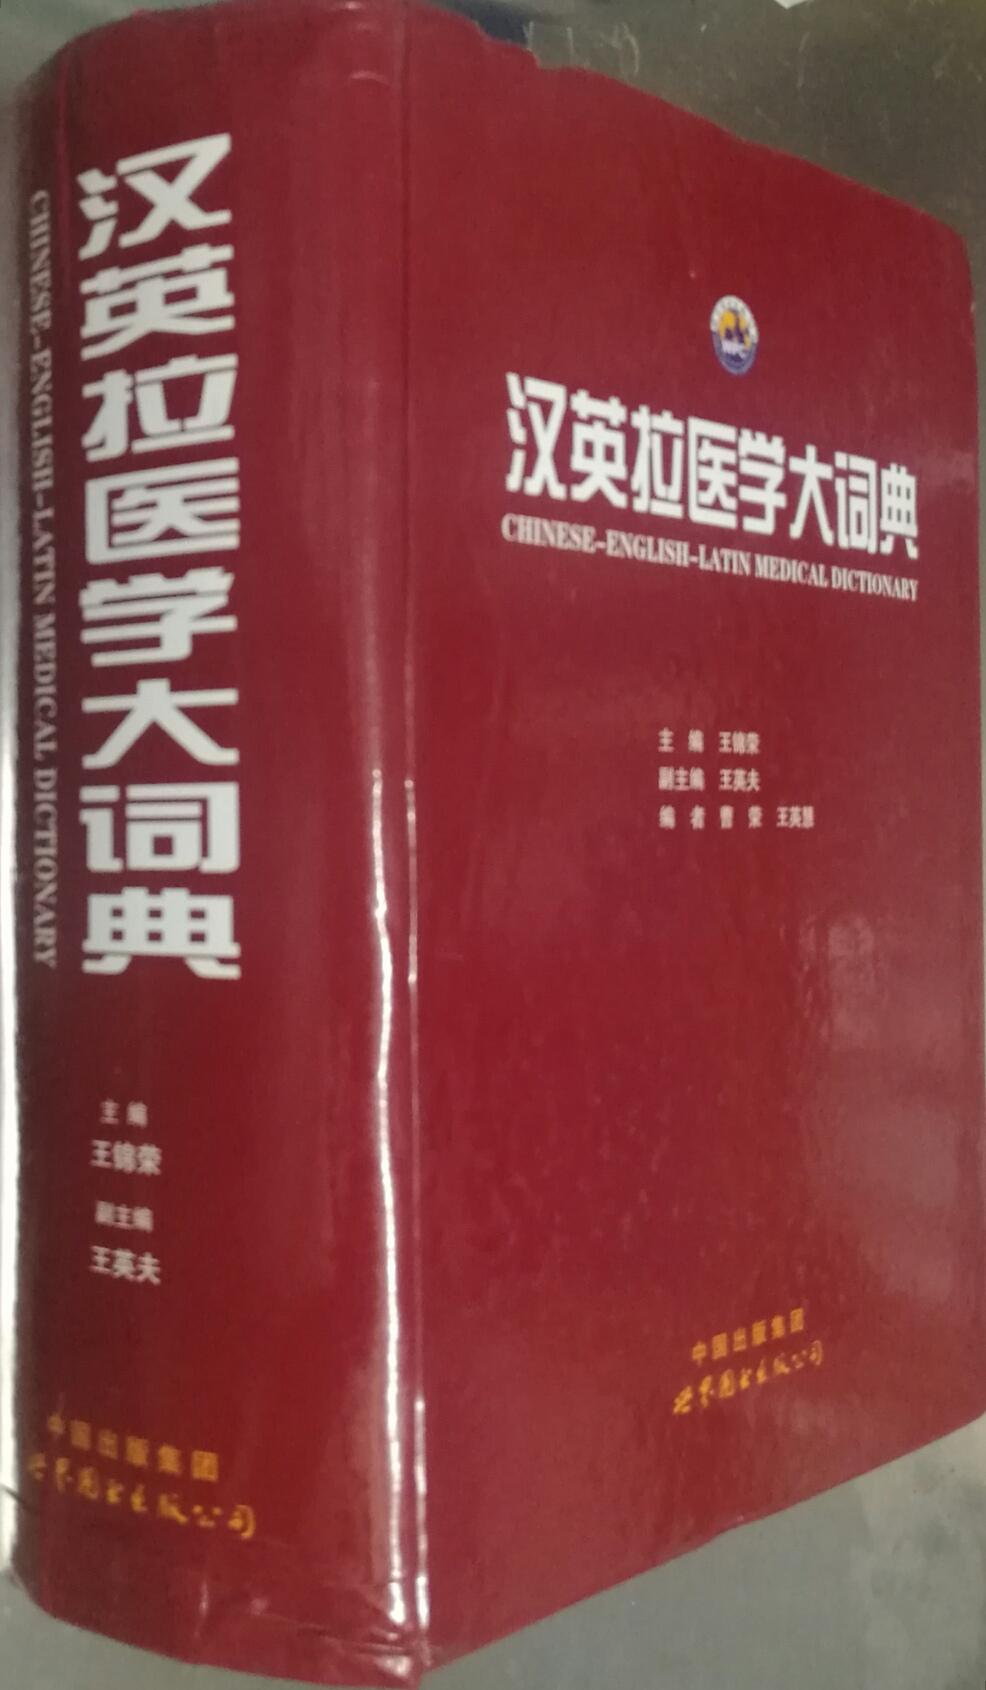 汉英拉医学大词典 王锦荣 世界图书出版公司9787510098376